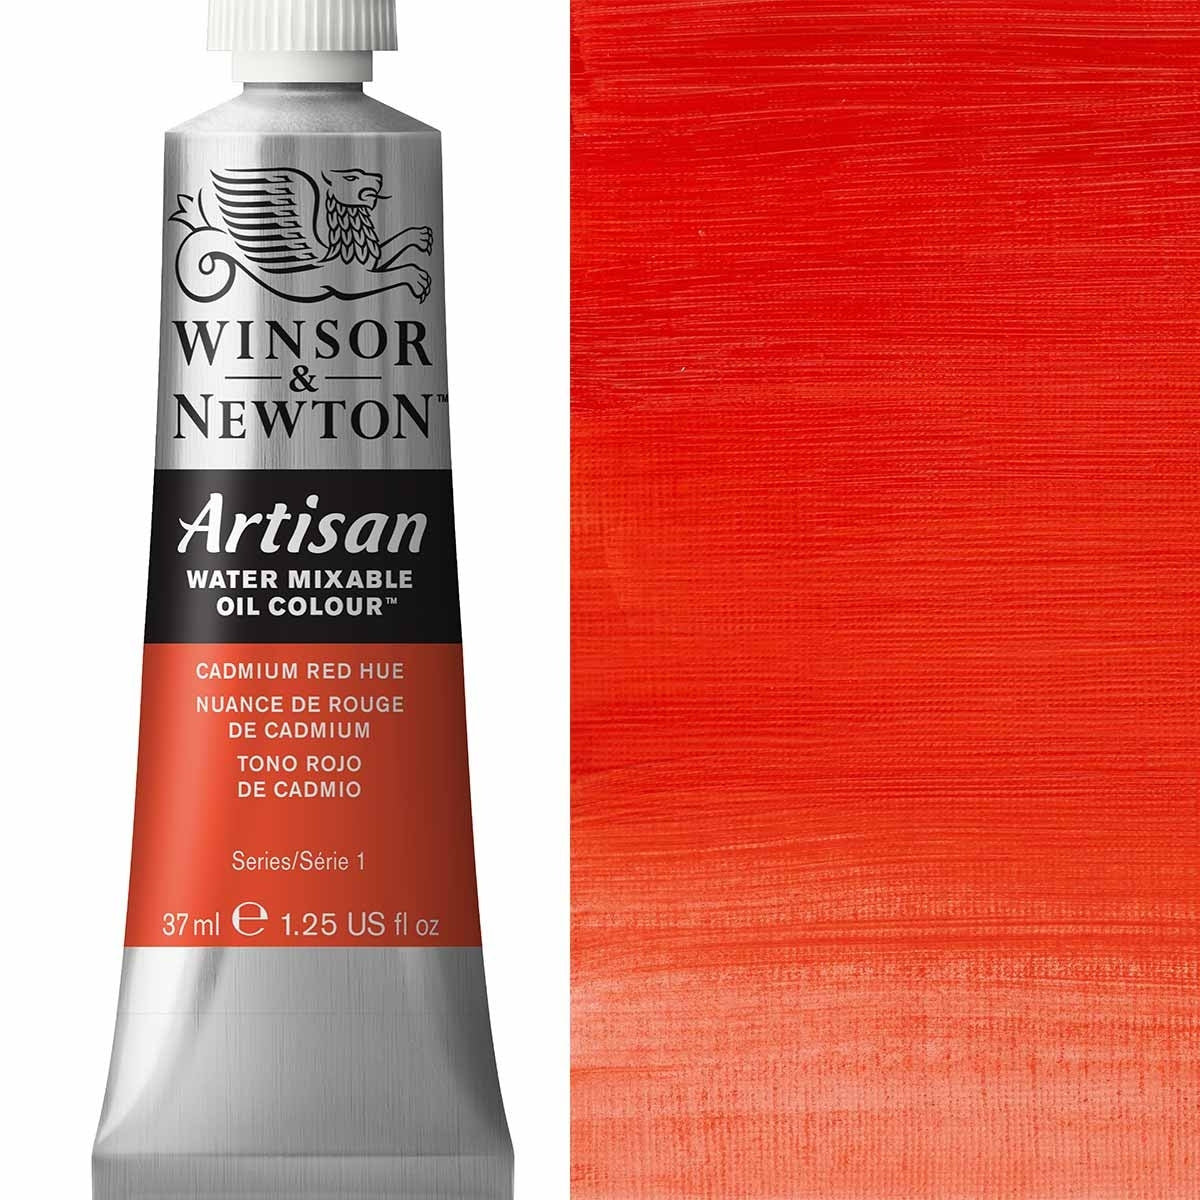 Winsor e Newton - Watermixable di colore olio artigianale - 37 ml - tonalità rossa del cadmio